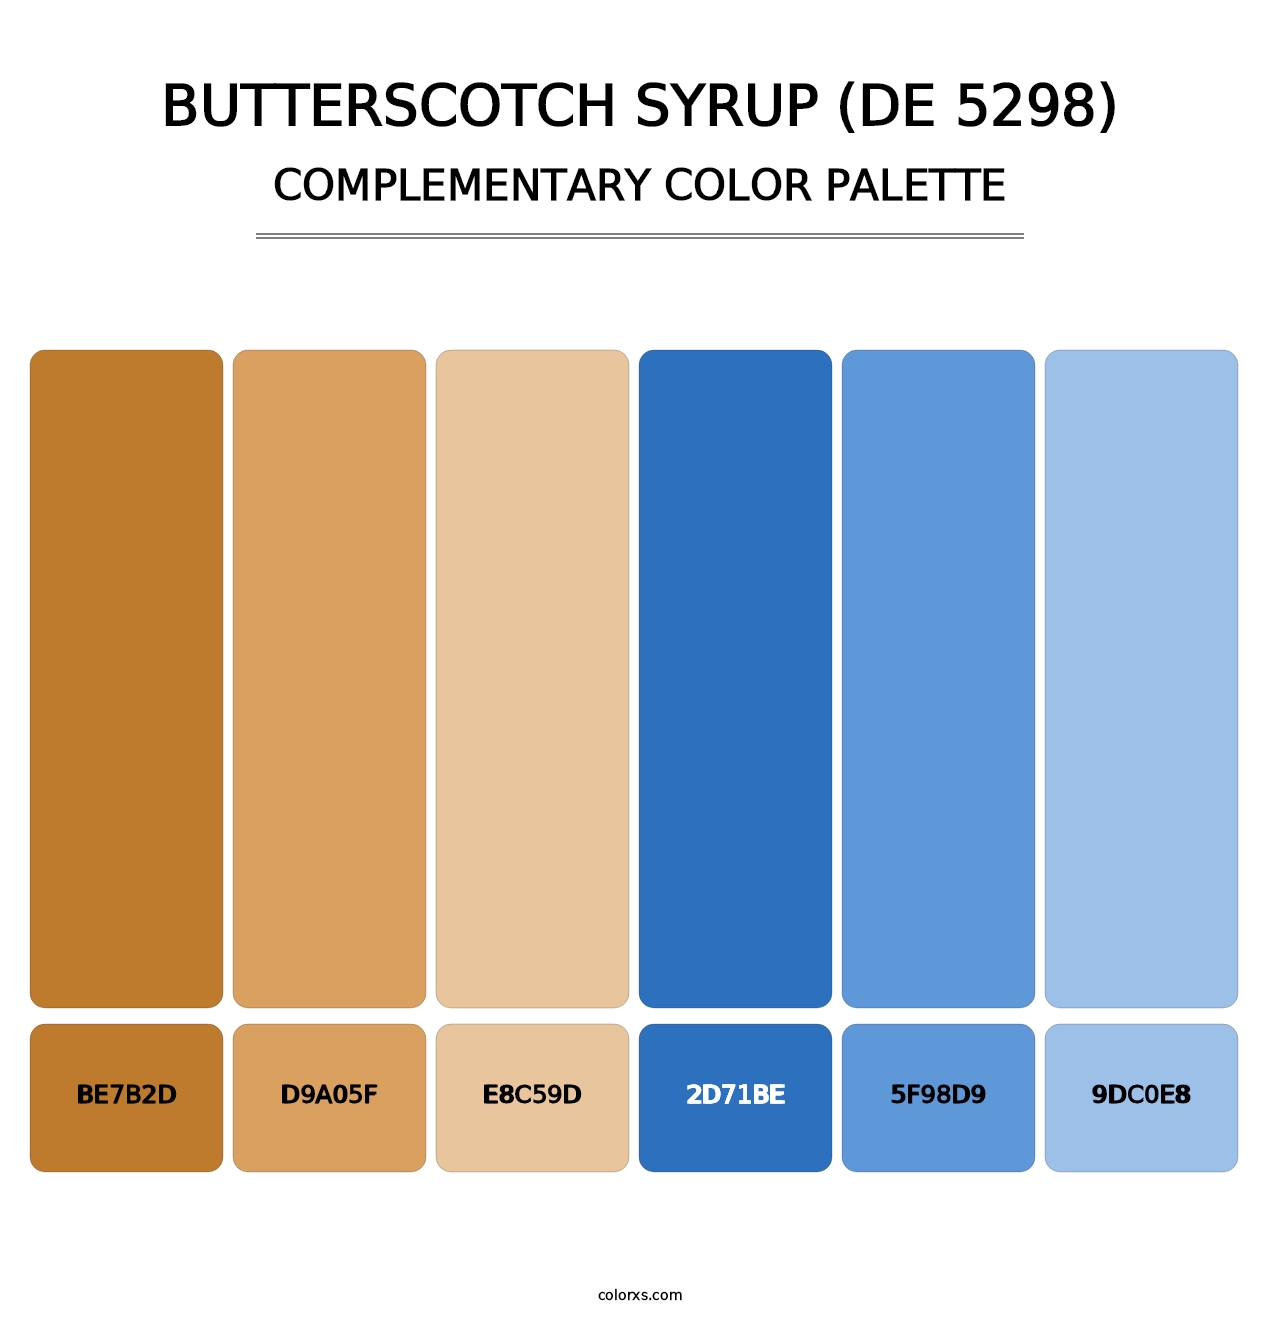 Butterscotch Syrup (DE 5298) - Complementary Color Palette